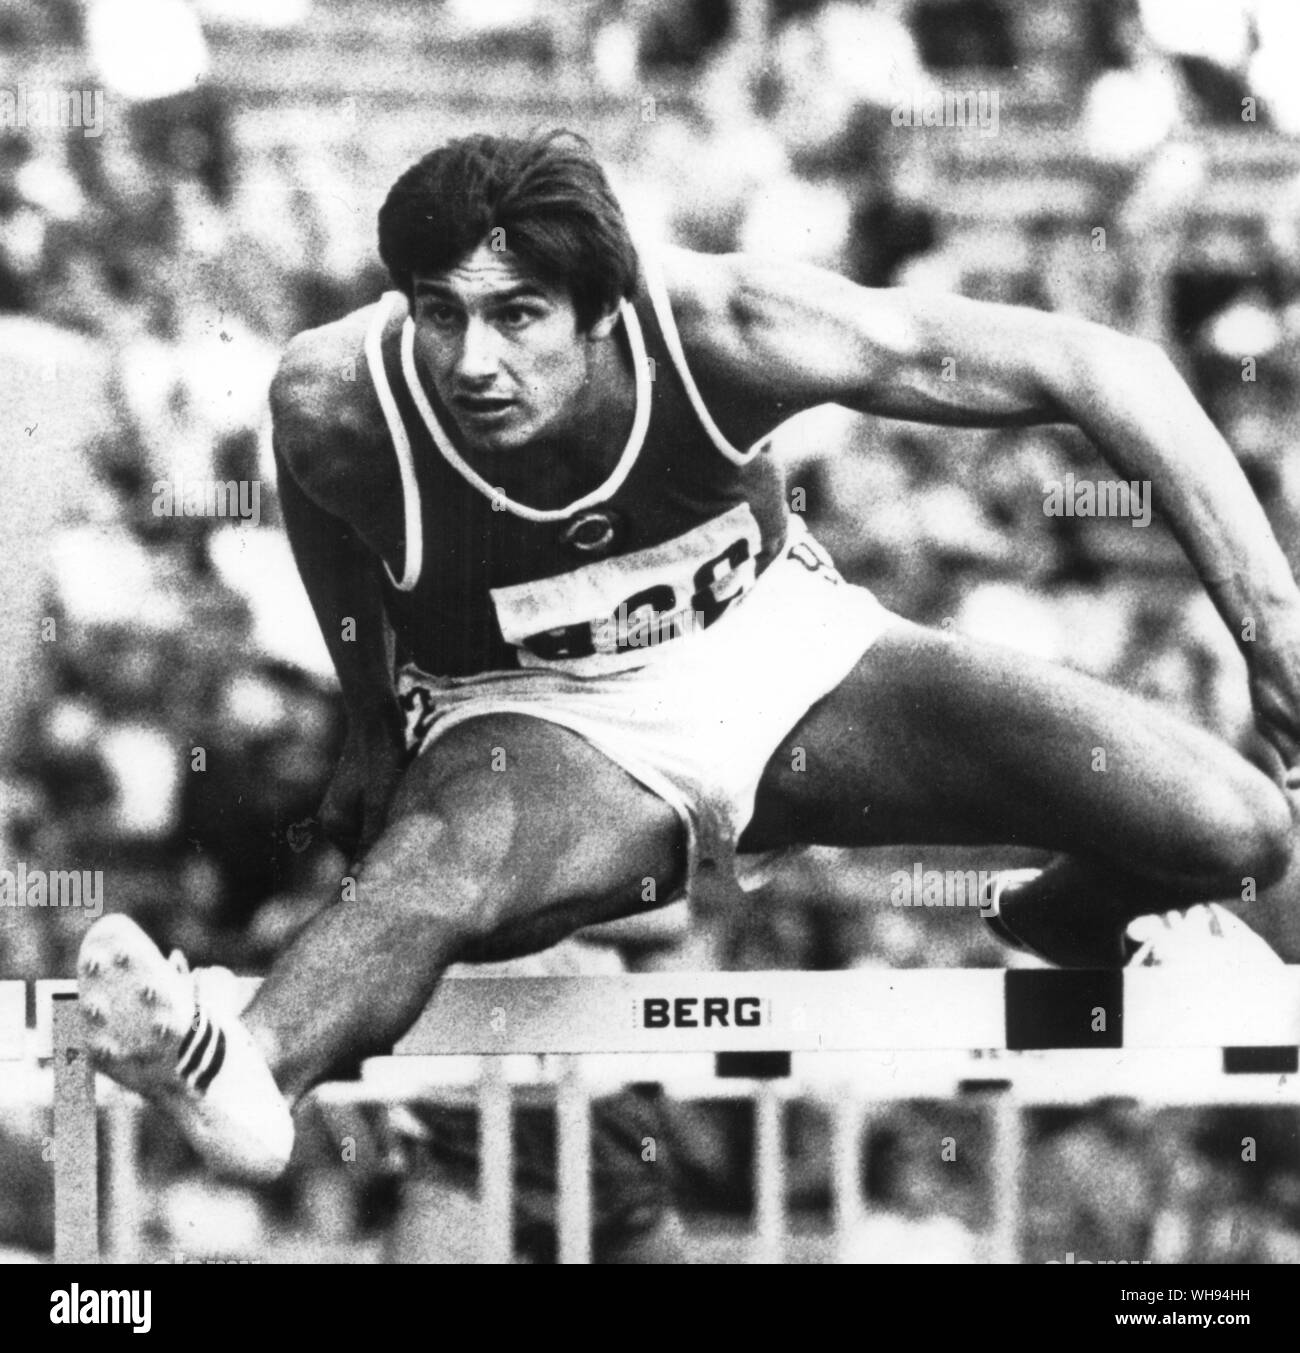 Olympischen Spielen in München Decathlon Gewinner. Nikolai Avilov der UDSSR Russland die 110 Meter Hürden bei der decathlon gewinnt Gold 8 September 1972 Stockfoto